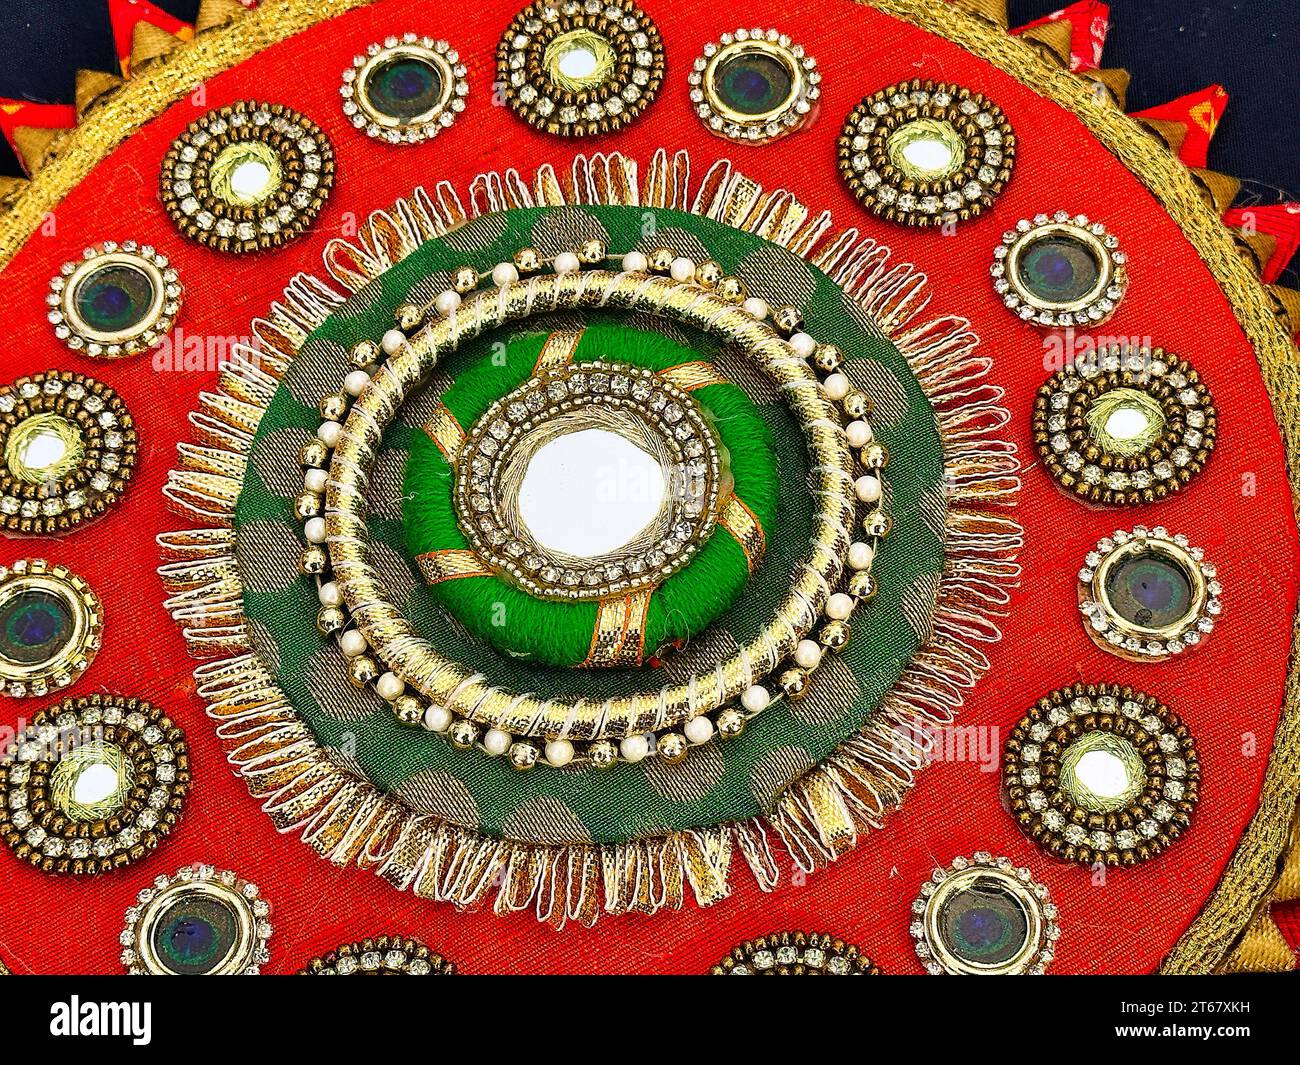 Objet souvenir indien vendu comme marchandise pendant le Festival de Diwali. L'événement annuel traditionnel est célébré à Nathan Phillips Square Banque D'Images